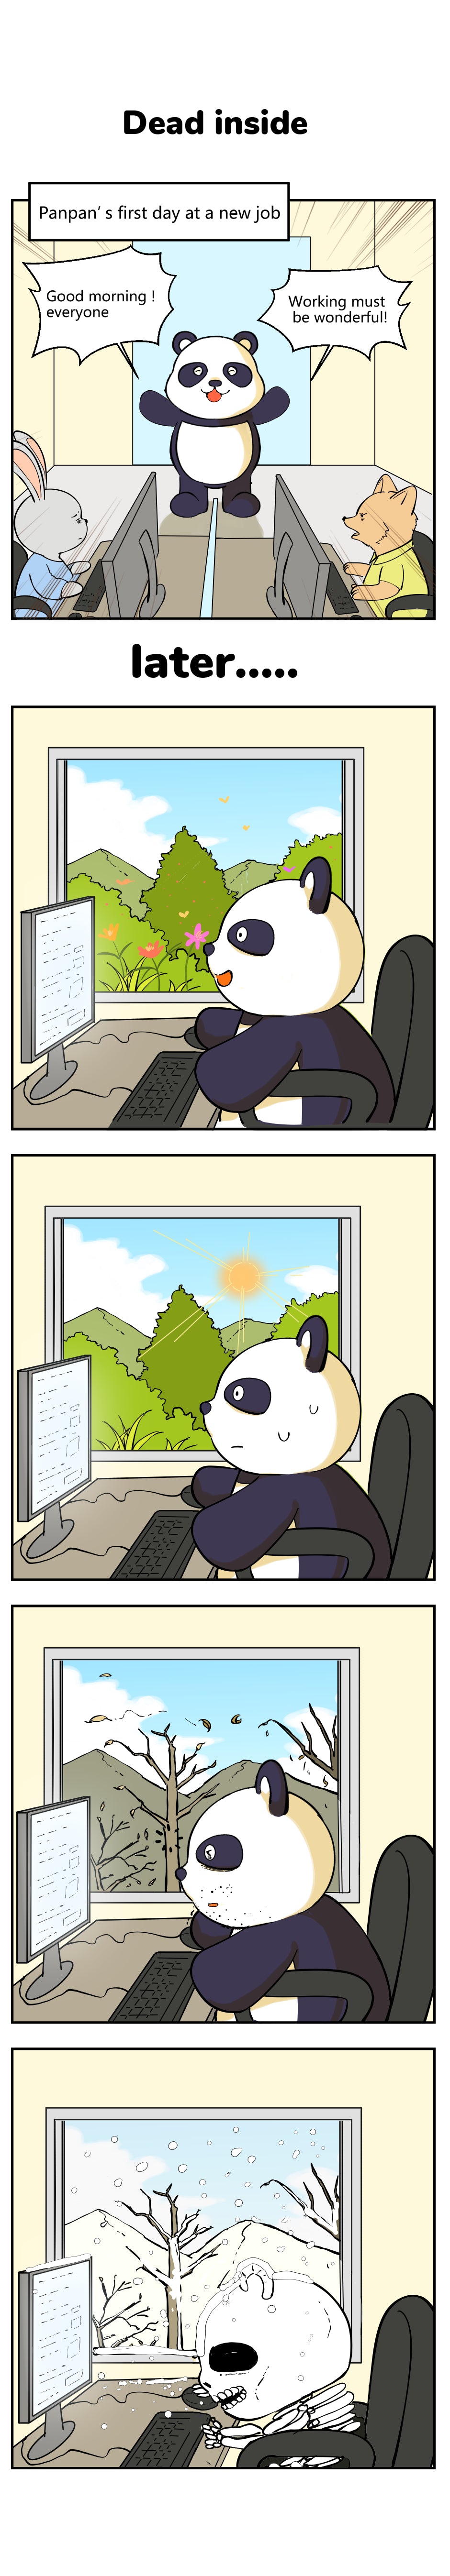 magic buddies comic panpan panda story at work working hard office